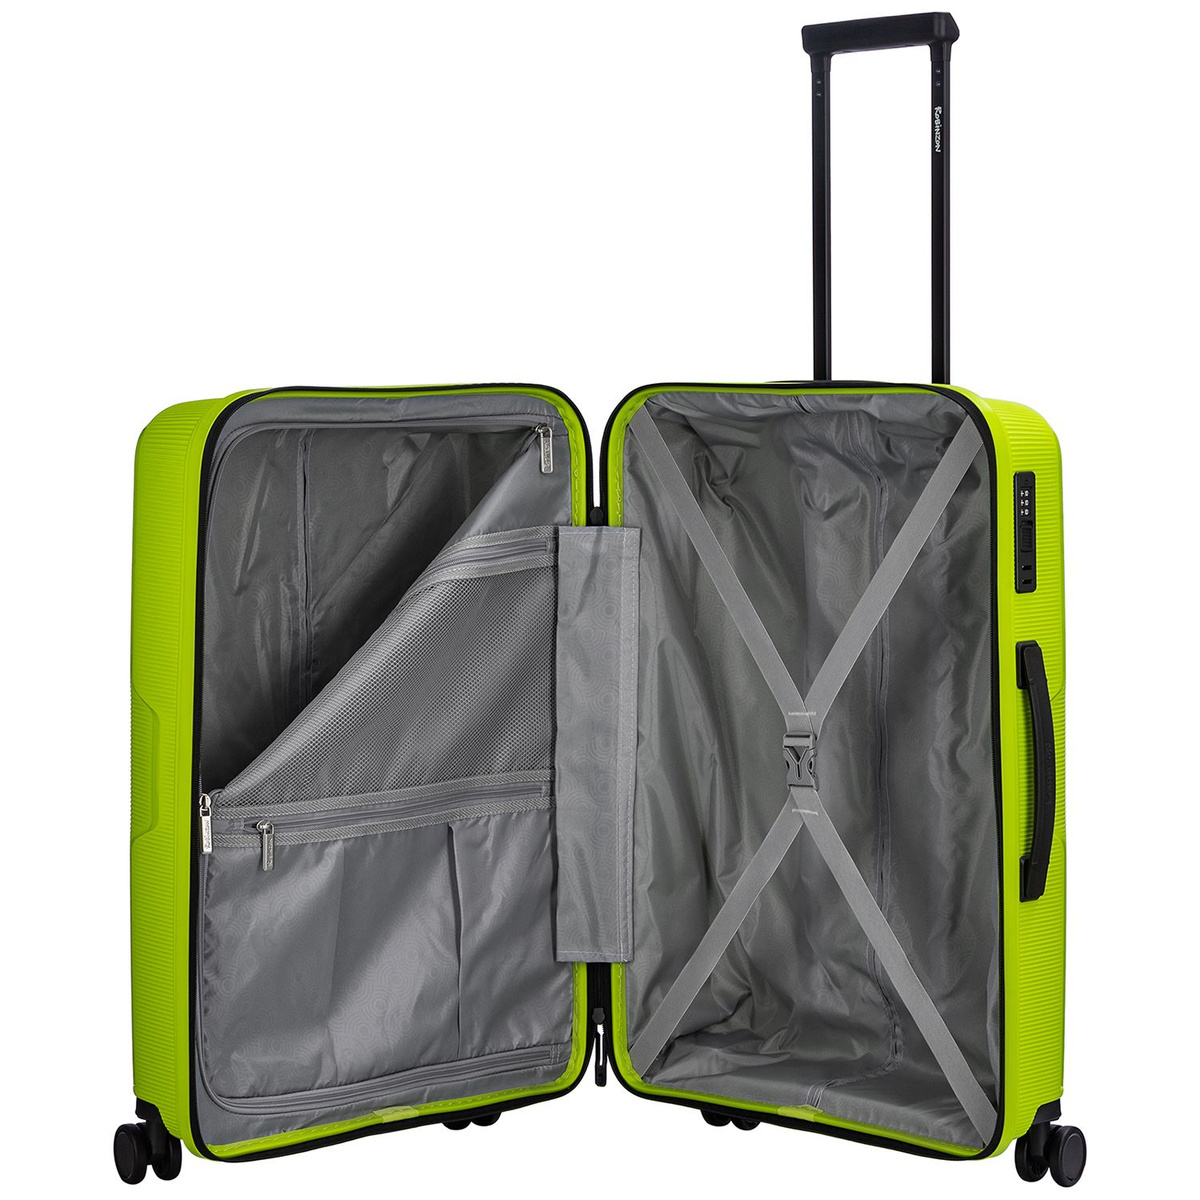 Внутри чемодана разделитель на молнии, в котором два дополнительных кармана и просторное отделение с багажными ремнями для ещё более удобной организации.